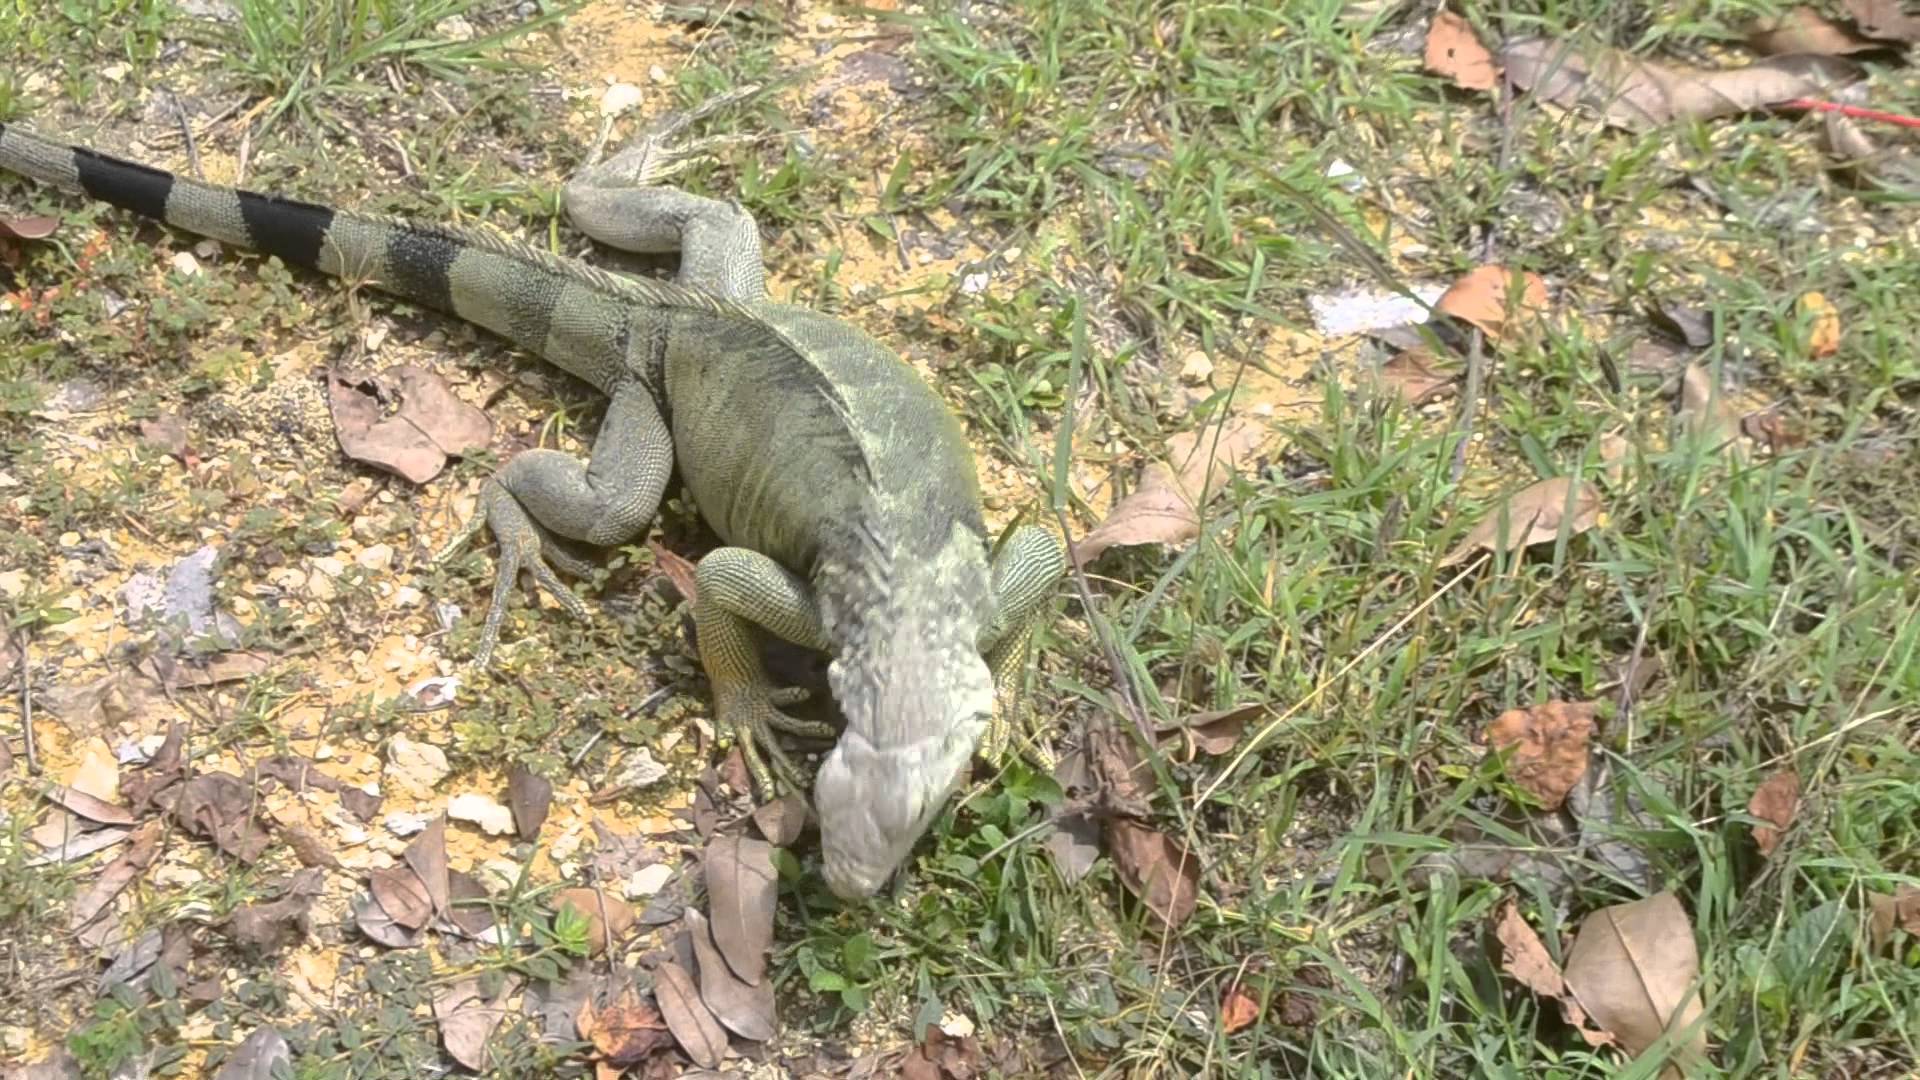 Iguana Lizard - Puerto Rico - YouTube